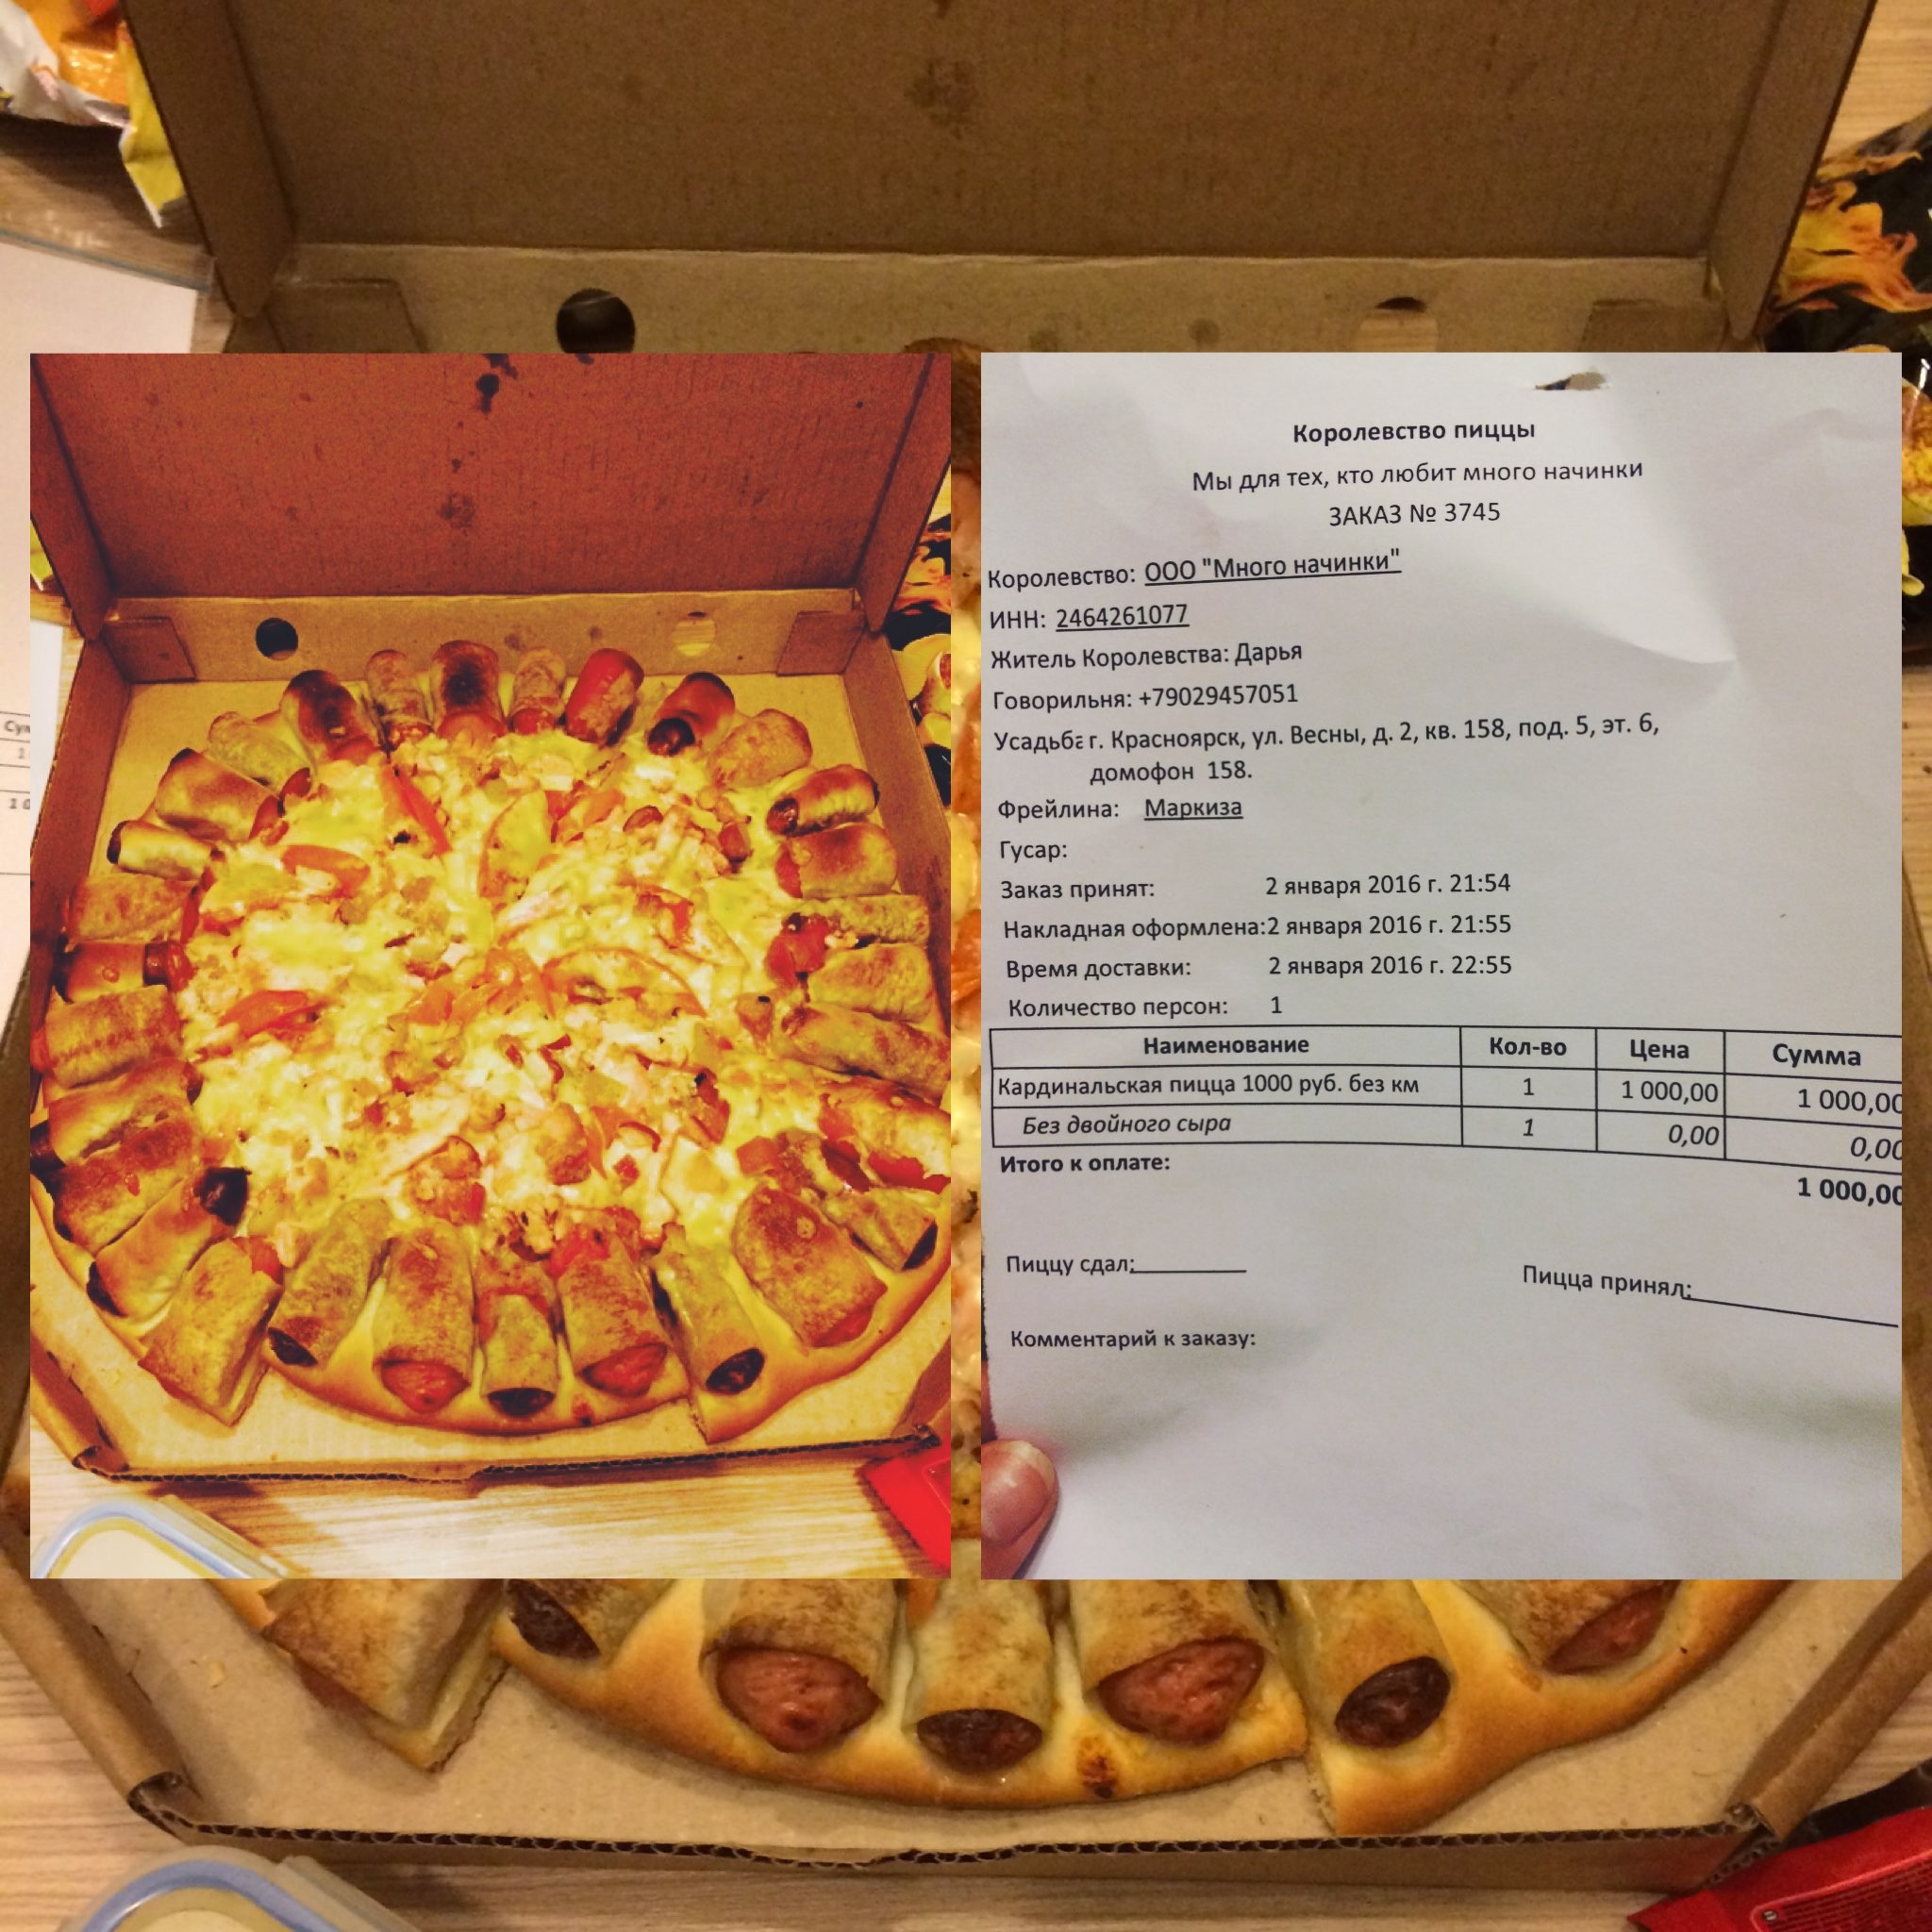 пицца лучшая в красноярске рейтинг фото 17